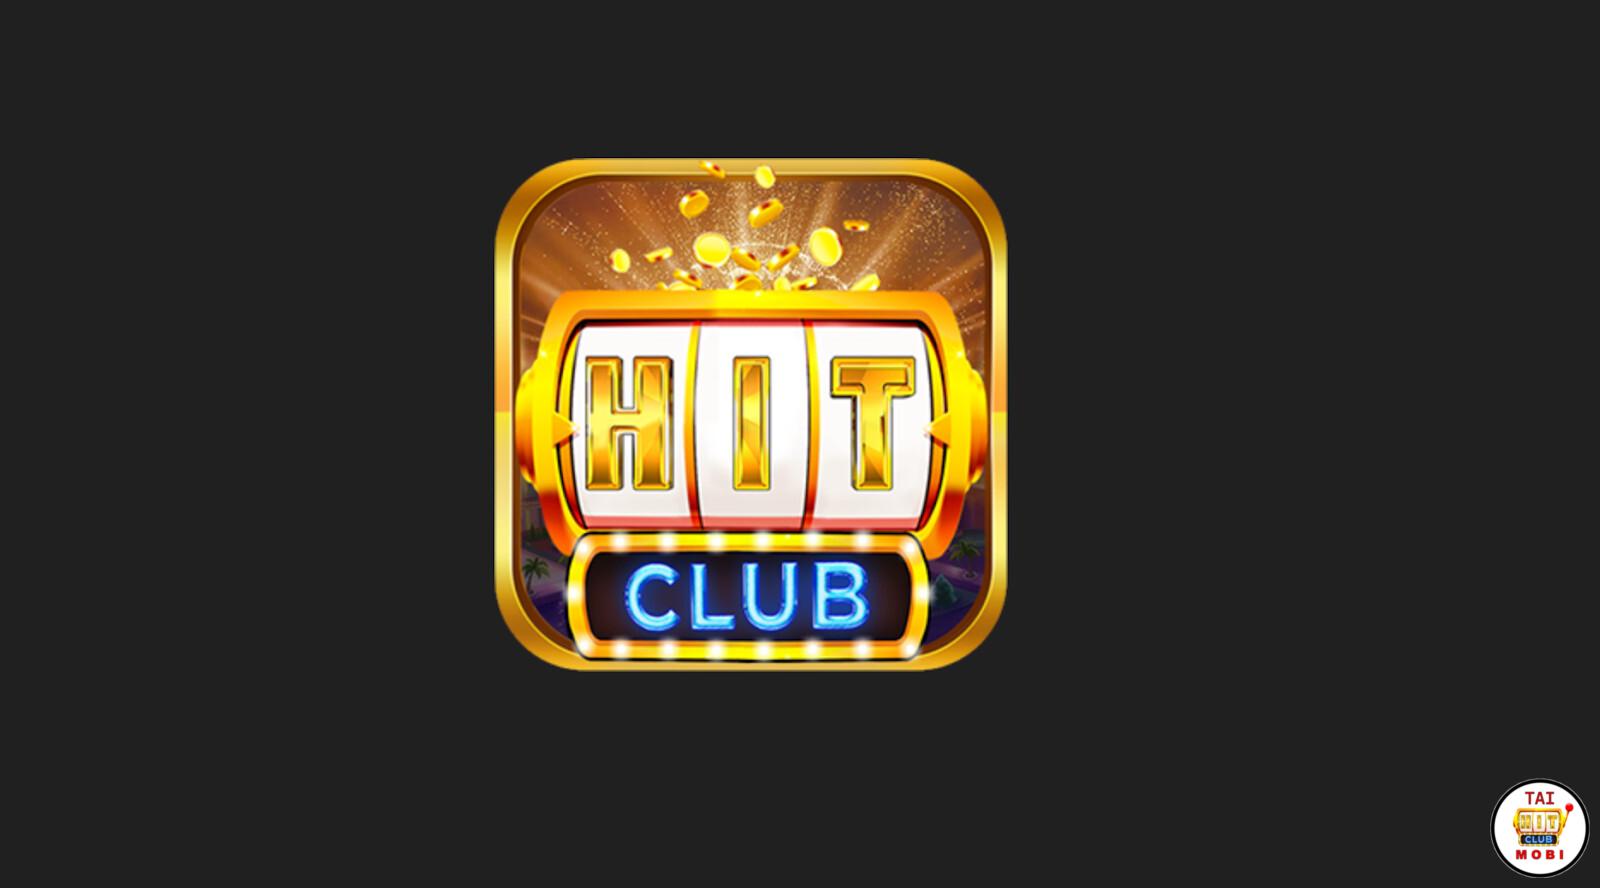 Hit3.club là tên miền phụ chính thức của Hitclub